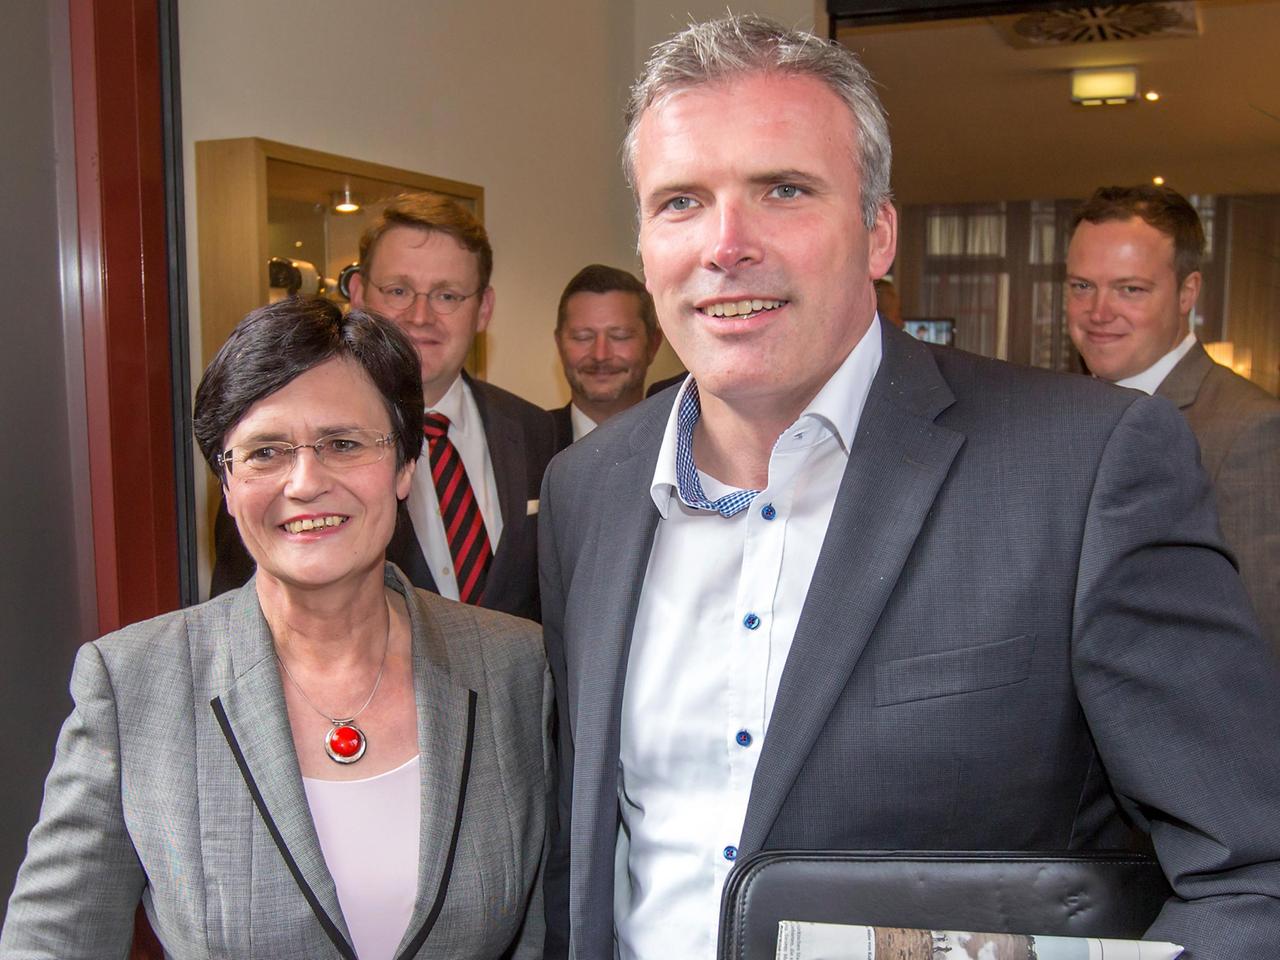 Thüringens Ministerpräsidentin Christine Lieberknecht (CDU) und Erfurts Oberbürgermeister Andreas Bausewein (SPD) stehen am 17.10.2014 zu Beginn der letzten vorgesehenen Sondierungsrunde zwischen beiden Parteien in Erfurt (Thüringen) nebeneinander.